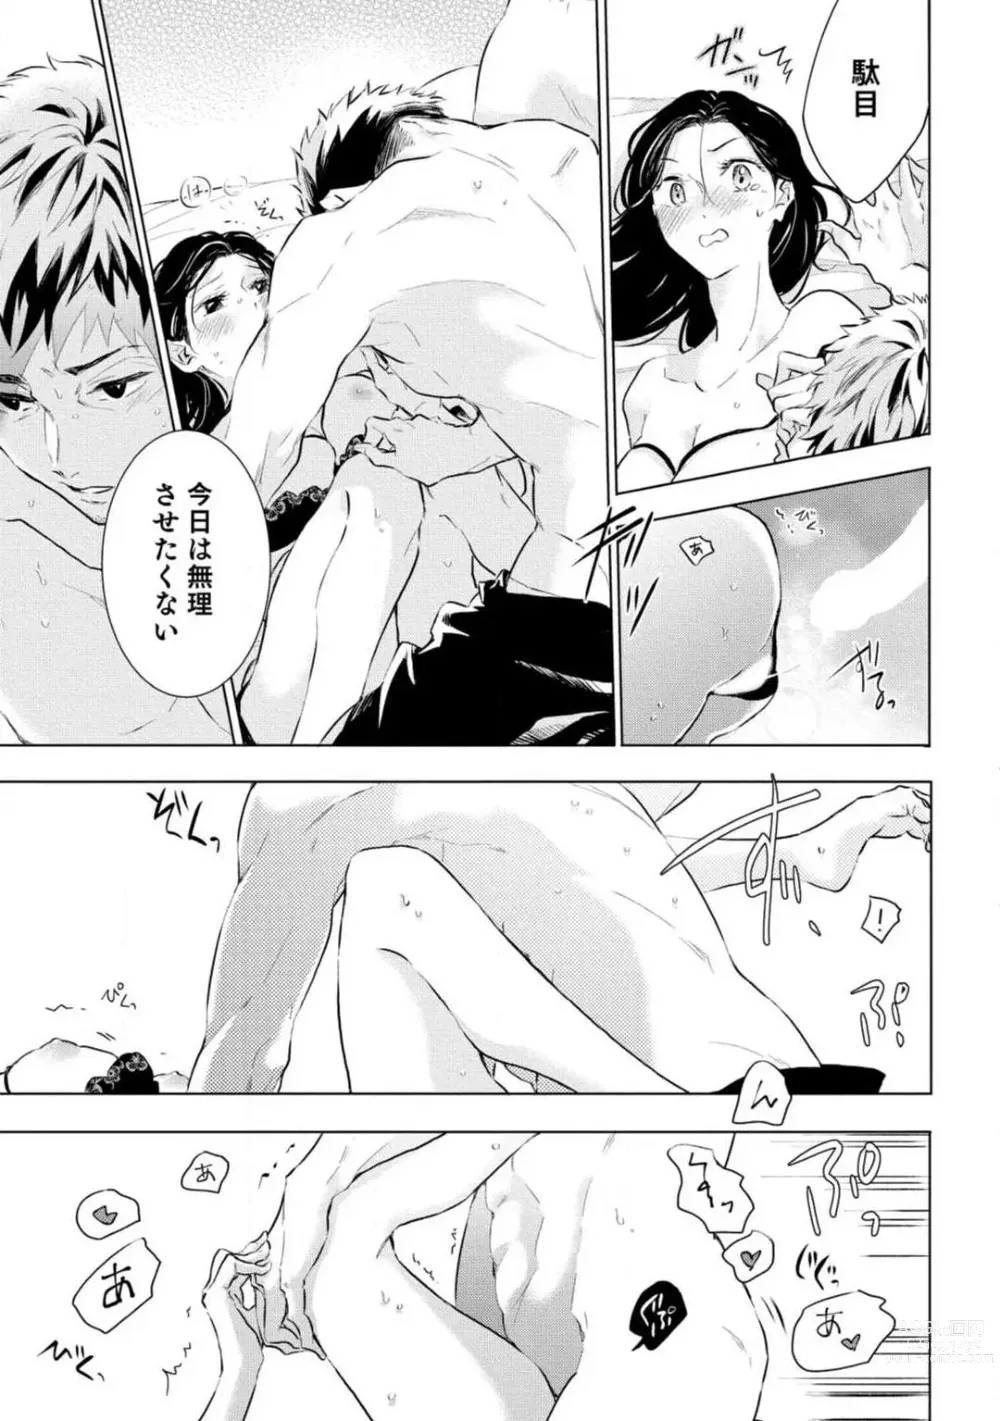 Page 280 of manga Yumemiru Henshuu-sha to Mukiryoku Shousetsuka 1-11